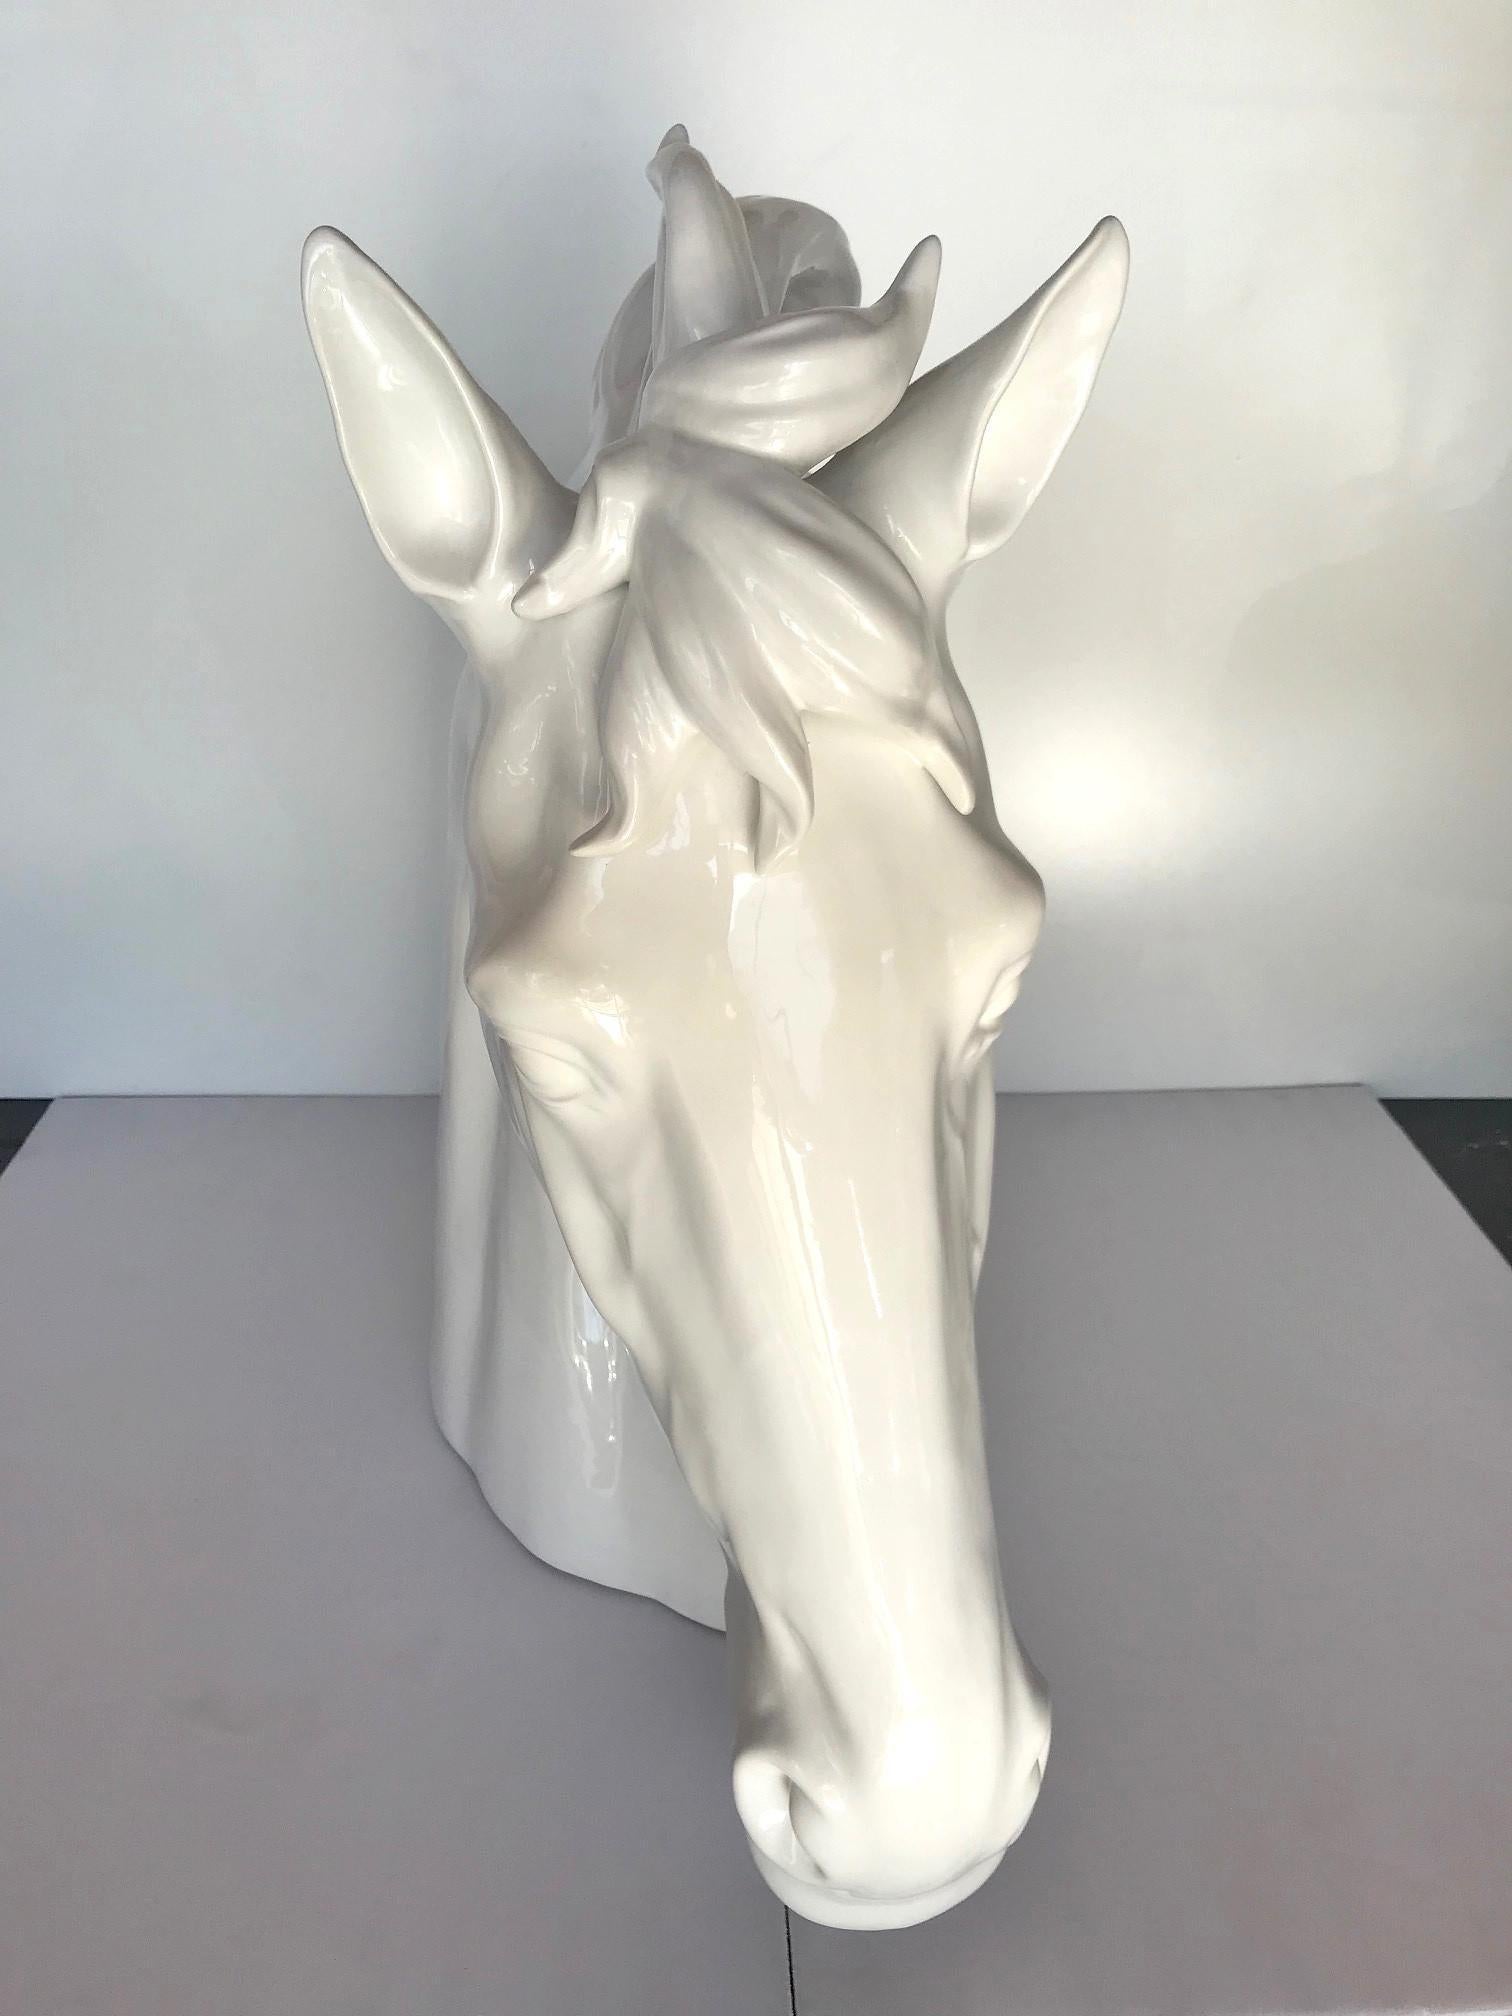 Sculpture de tête de cheval décorative en céramique blanche italienne / Fabriquée en Italie.